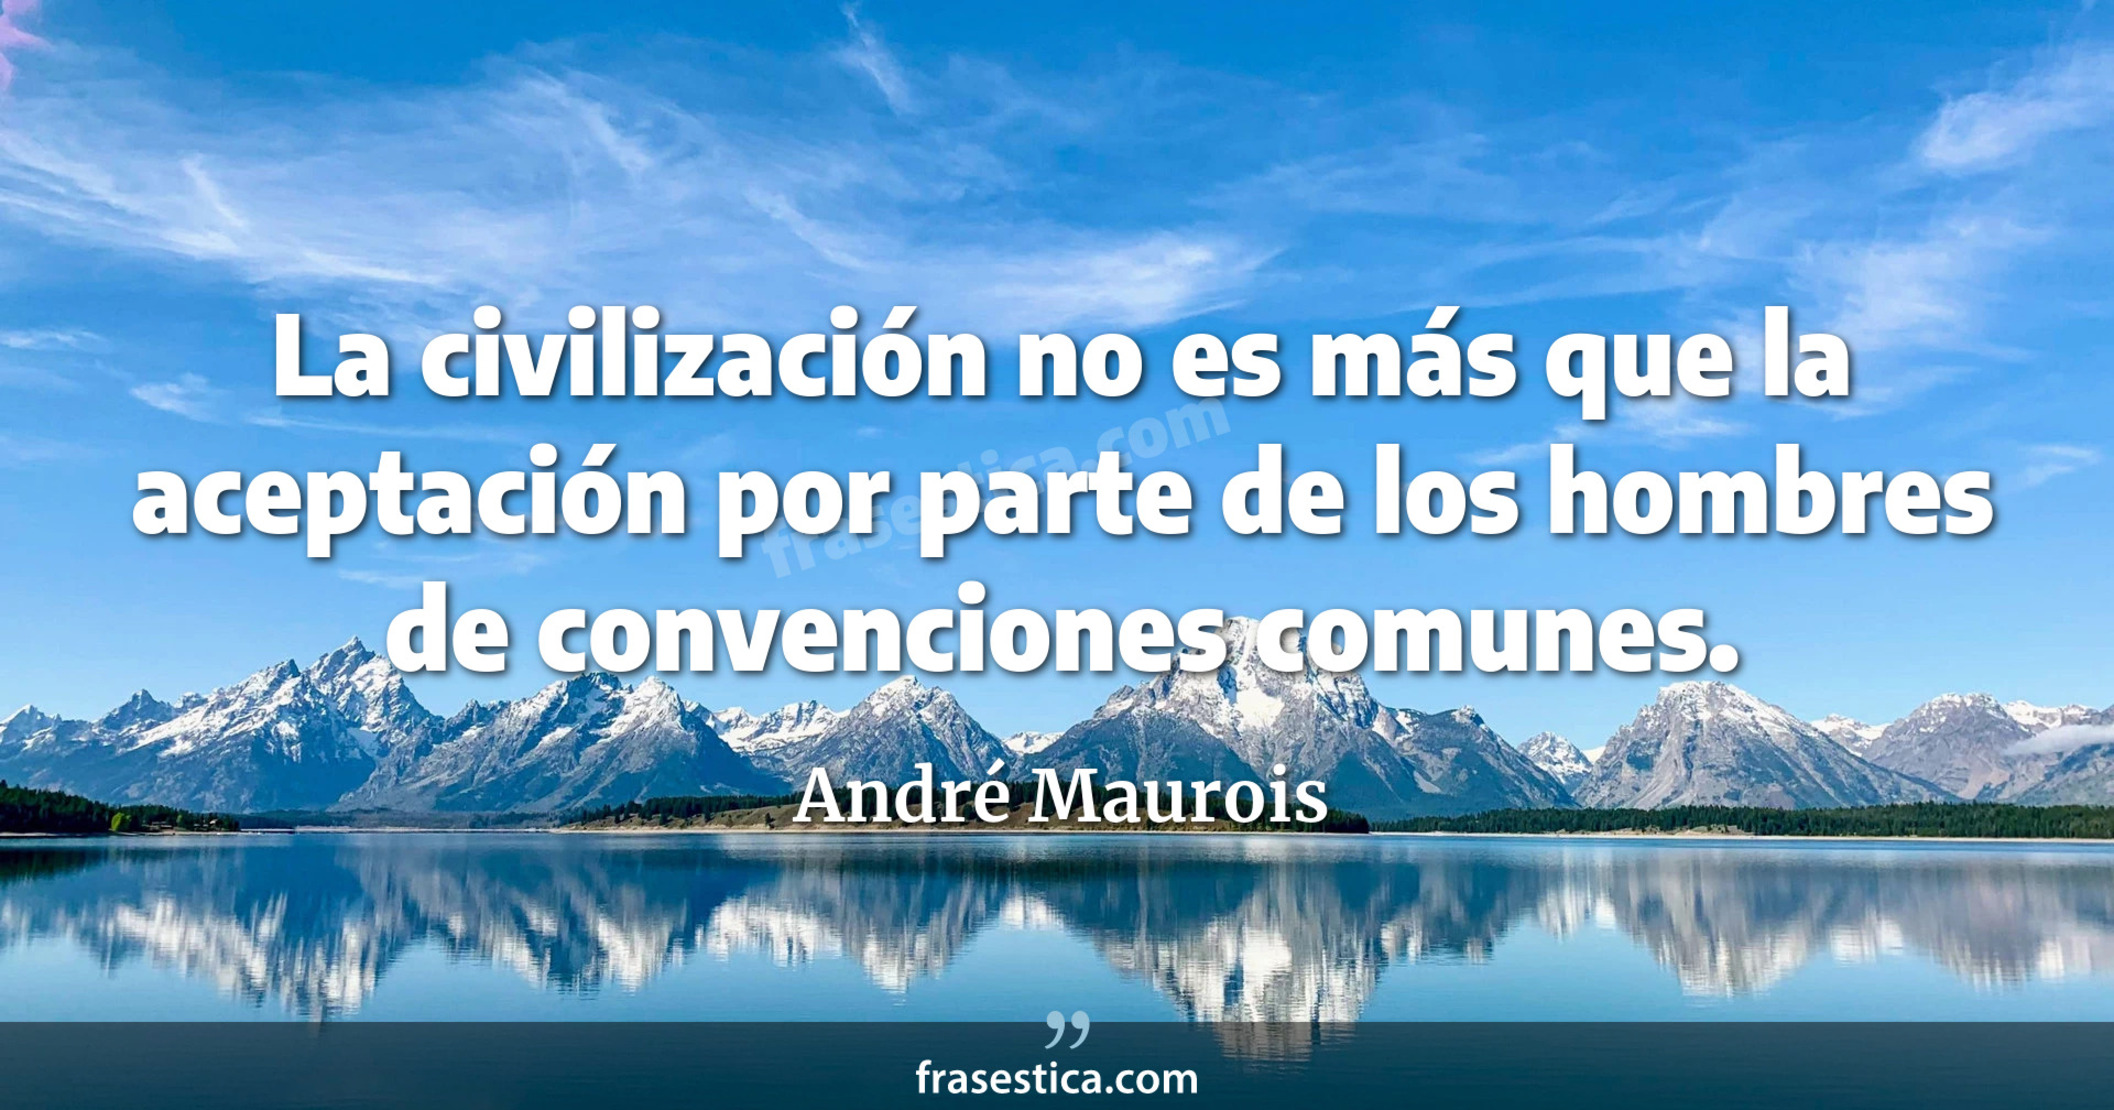 La civilización no es más que la aceptación por parte de los hombres de convenciones comunes. - André Maurois